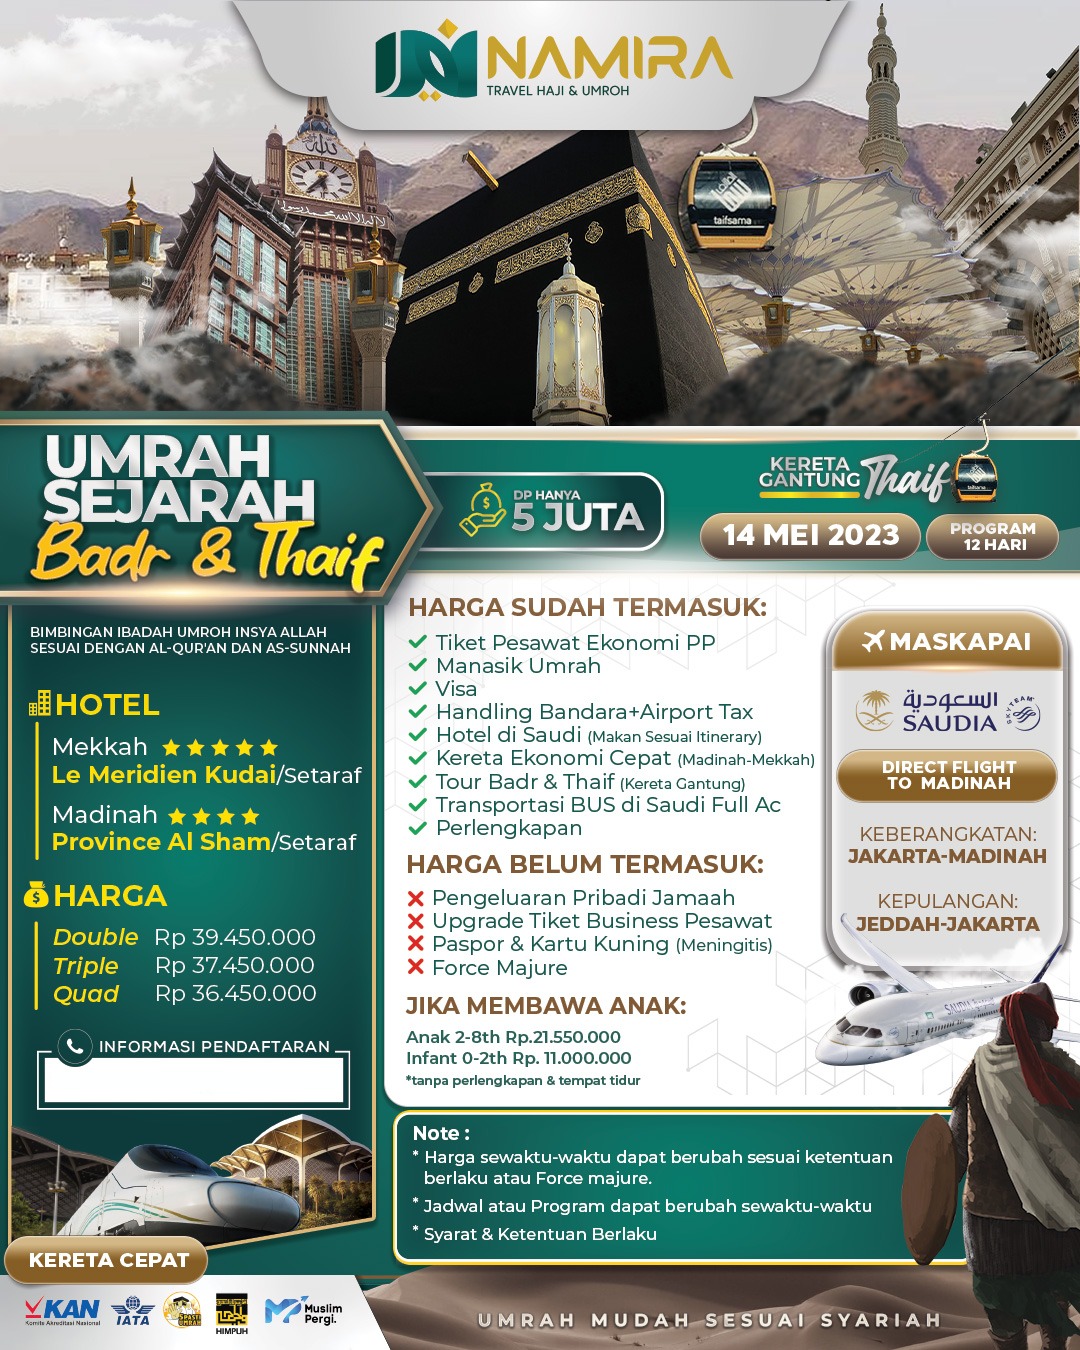 Paket Umroh 14 Mei 2023 Sejarah Bangkitnya Islam Namira Travel 1052